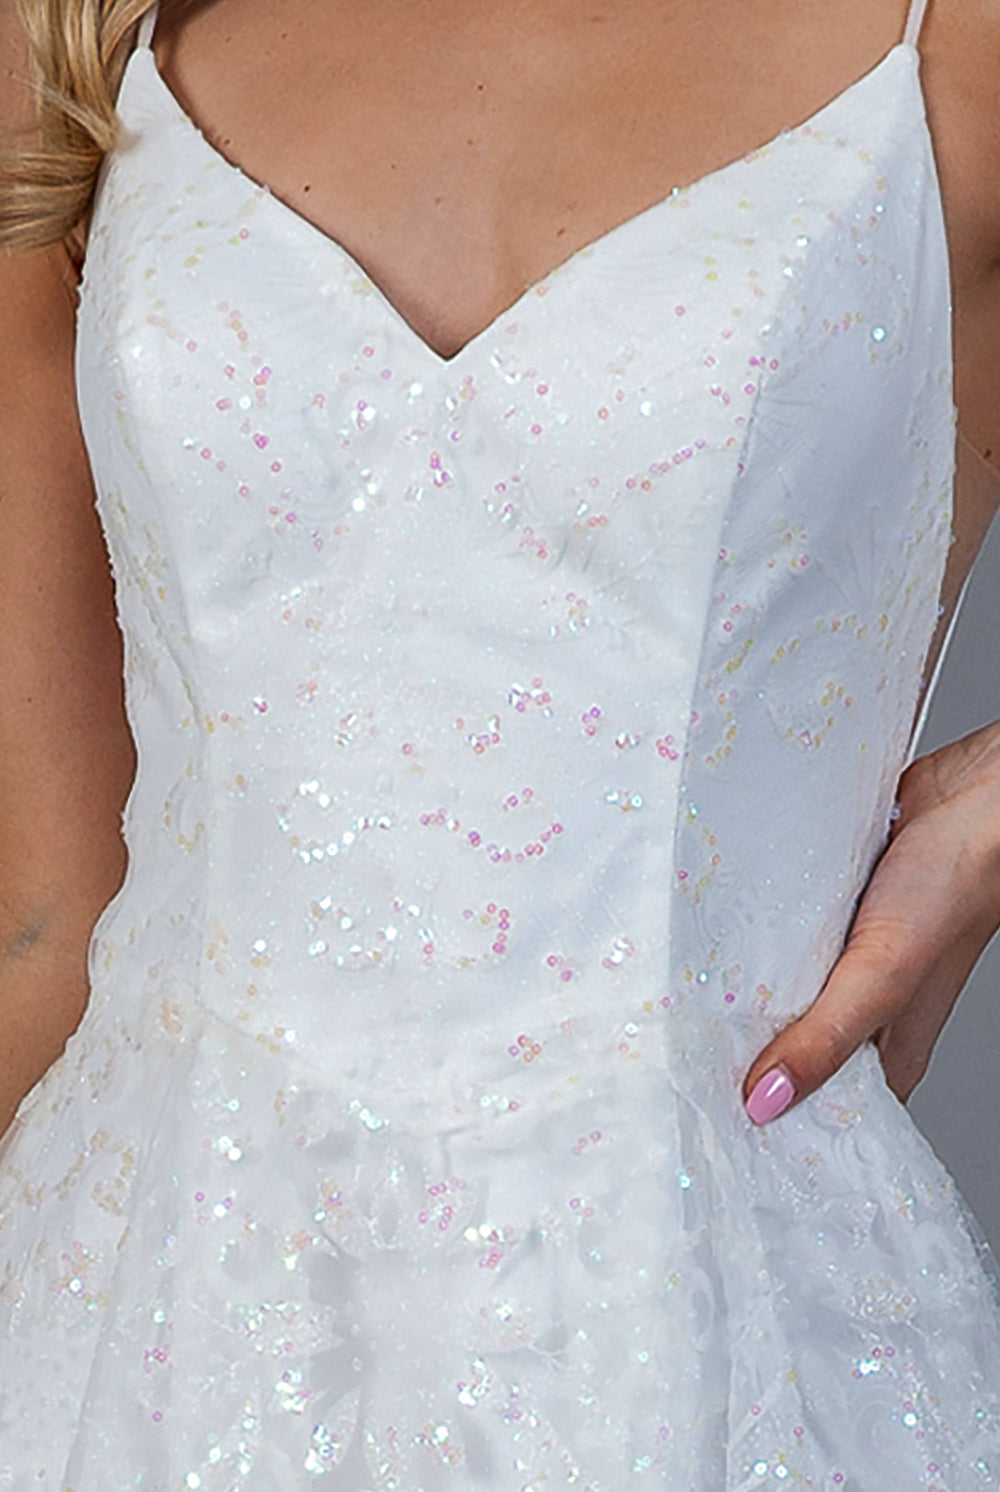 Glitter Embroidererd Lace Side Slit Open V-Back Long Prom Dress ACEL010-Prom Dress-smcfashion.com